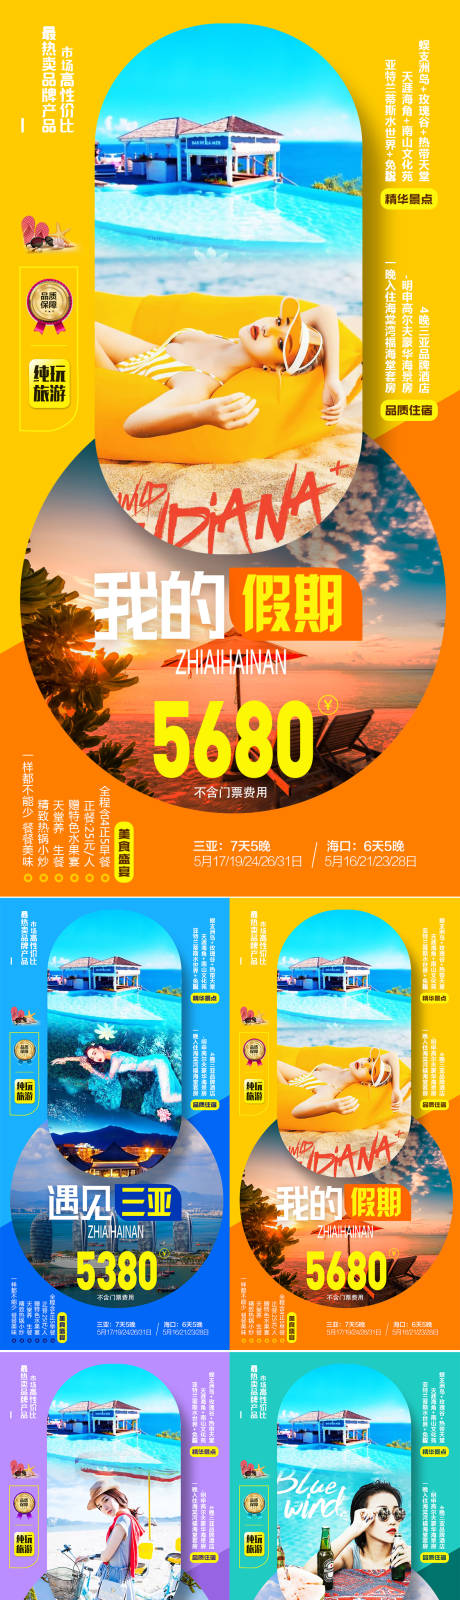 海南三亚海边旅游系列海报